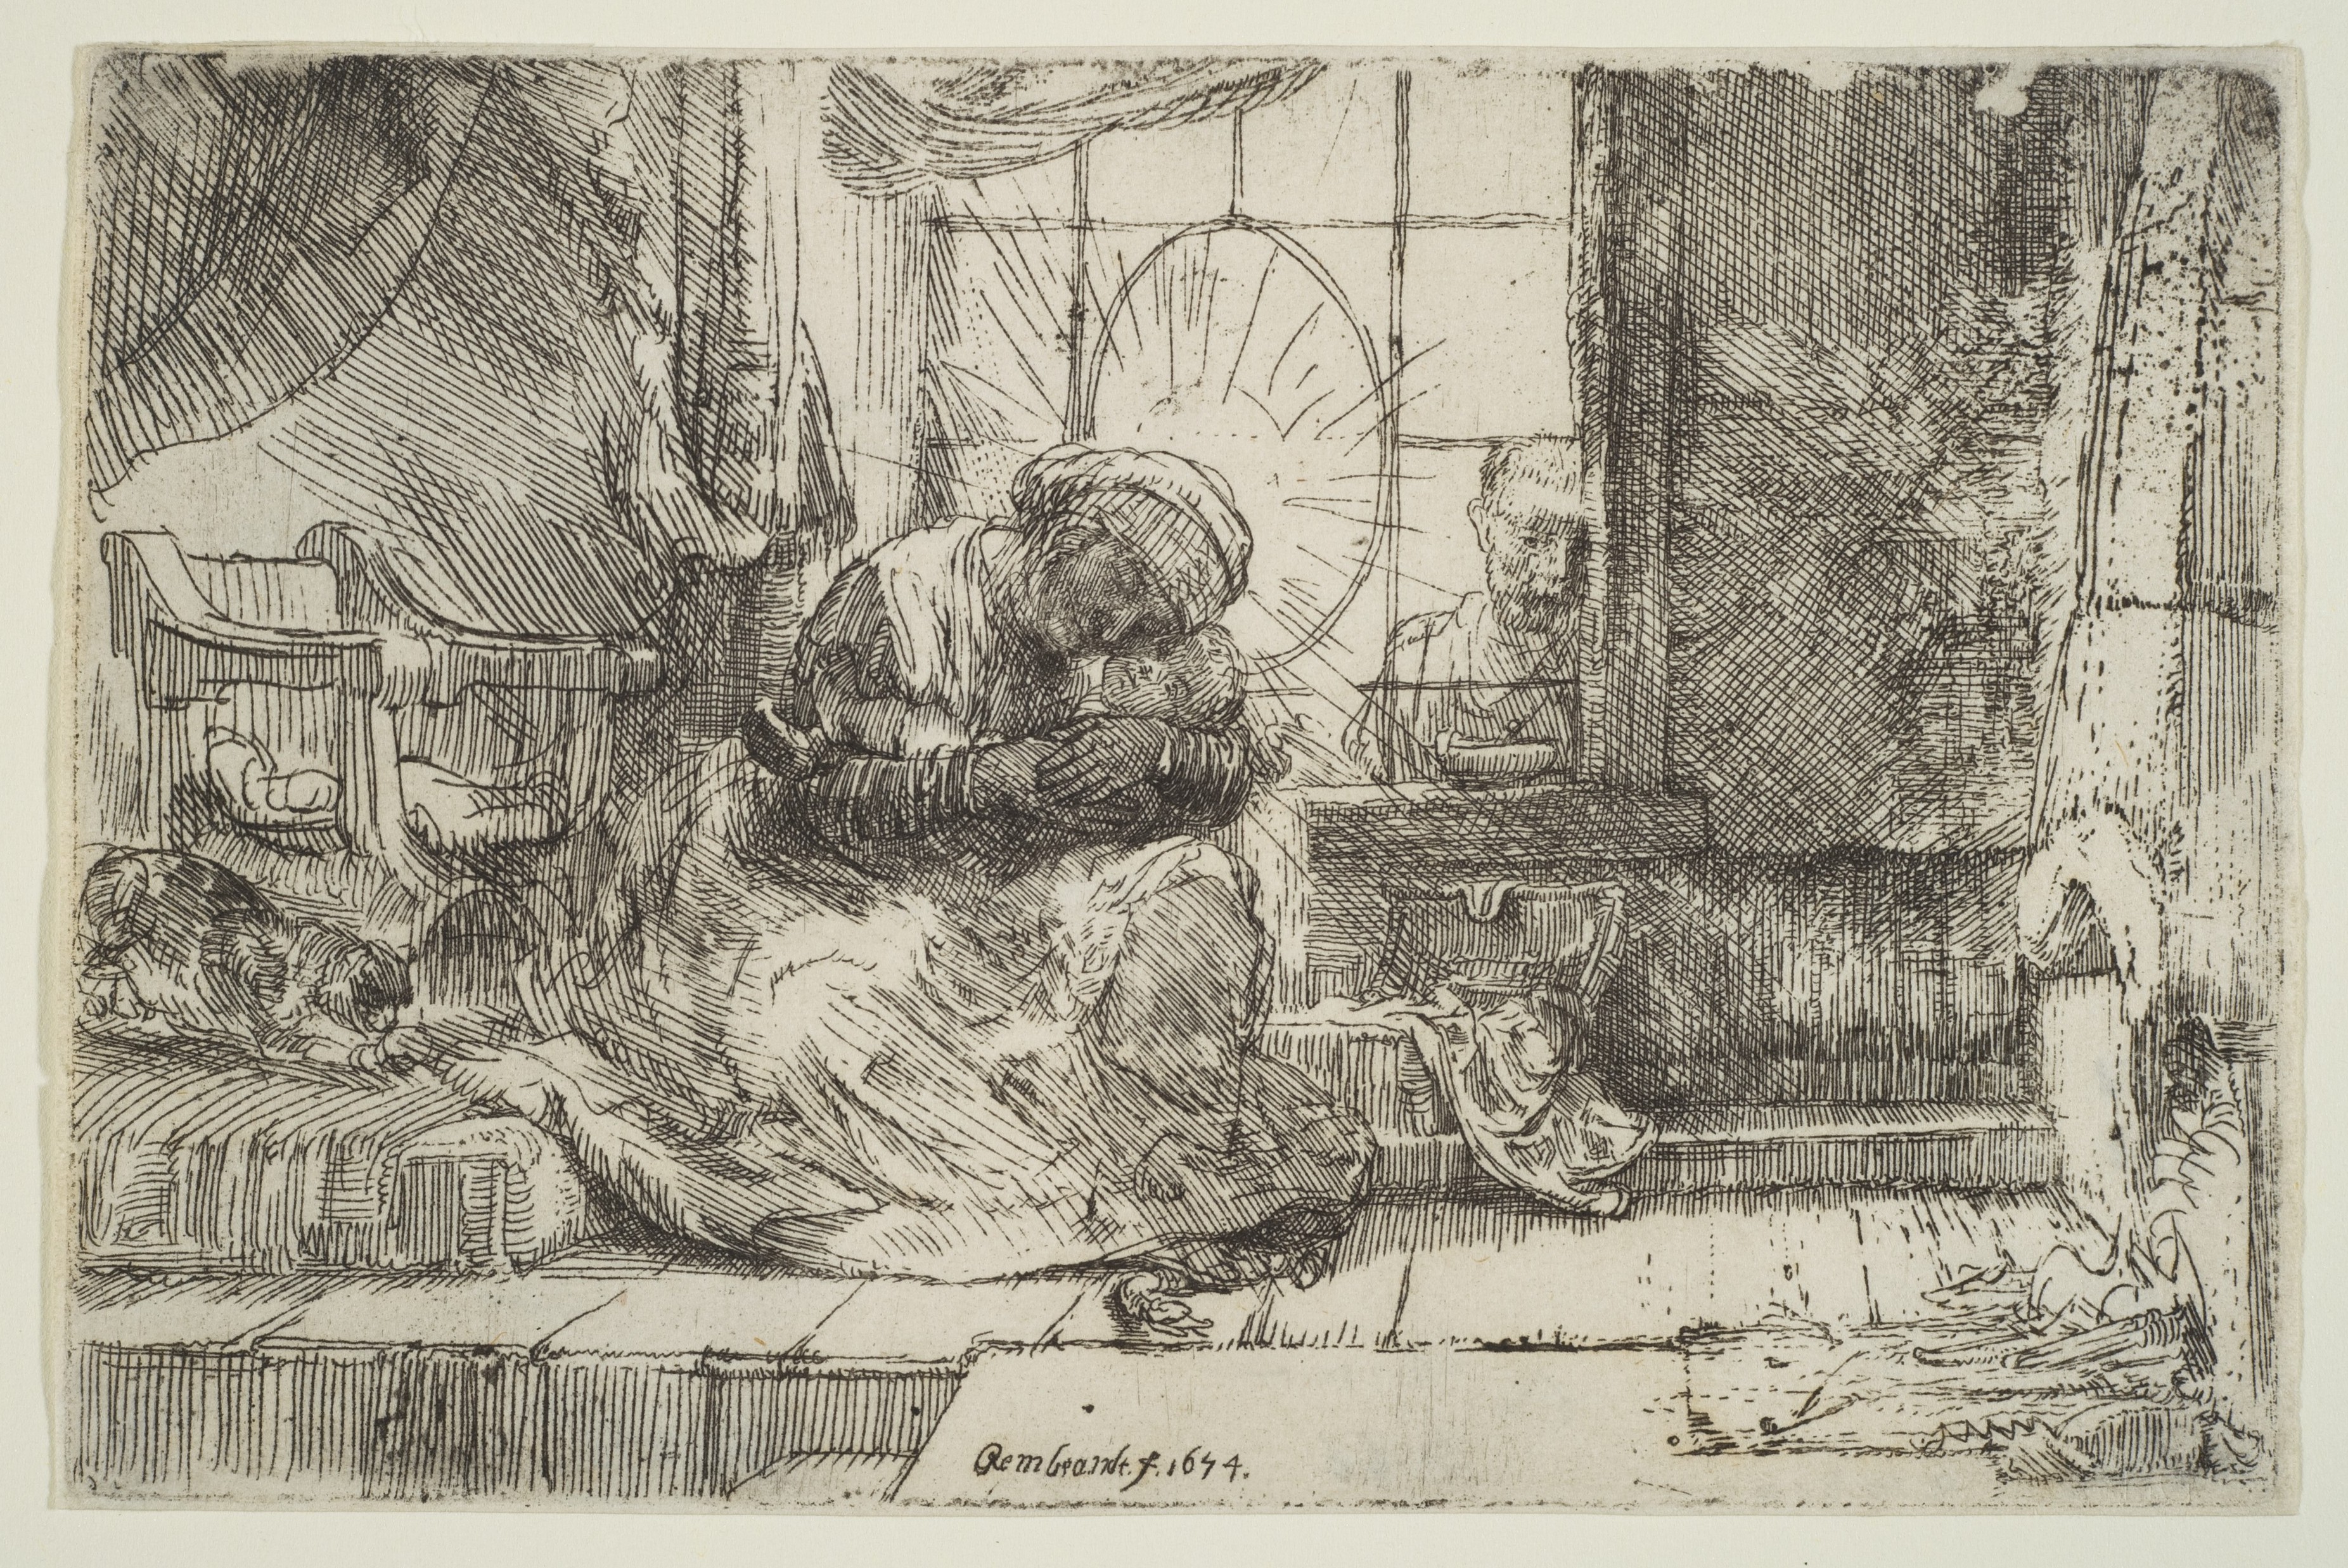 Rembrandt (Rembrandt van Rijn) Artworks collected in Metmuseum